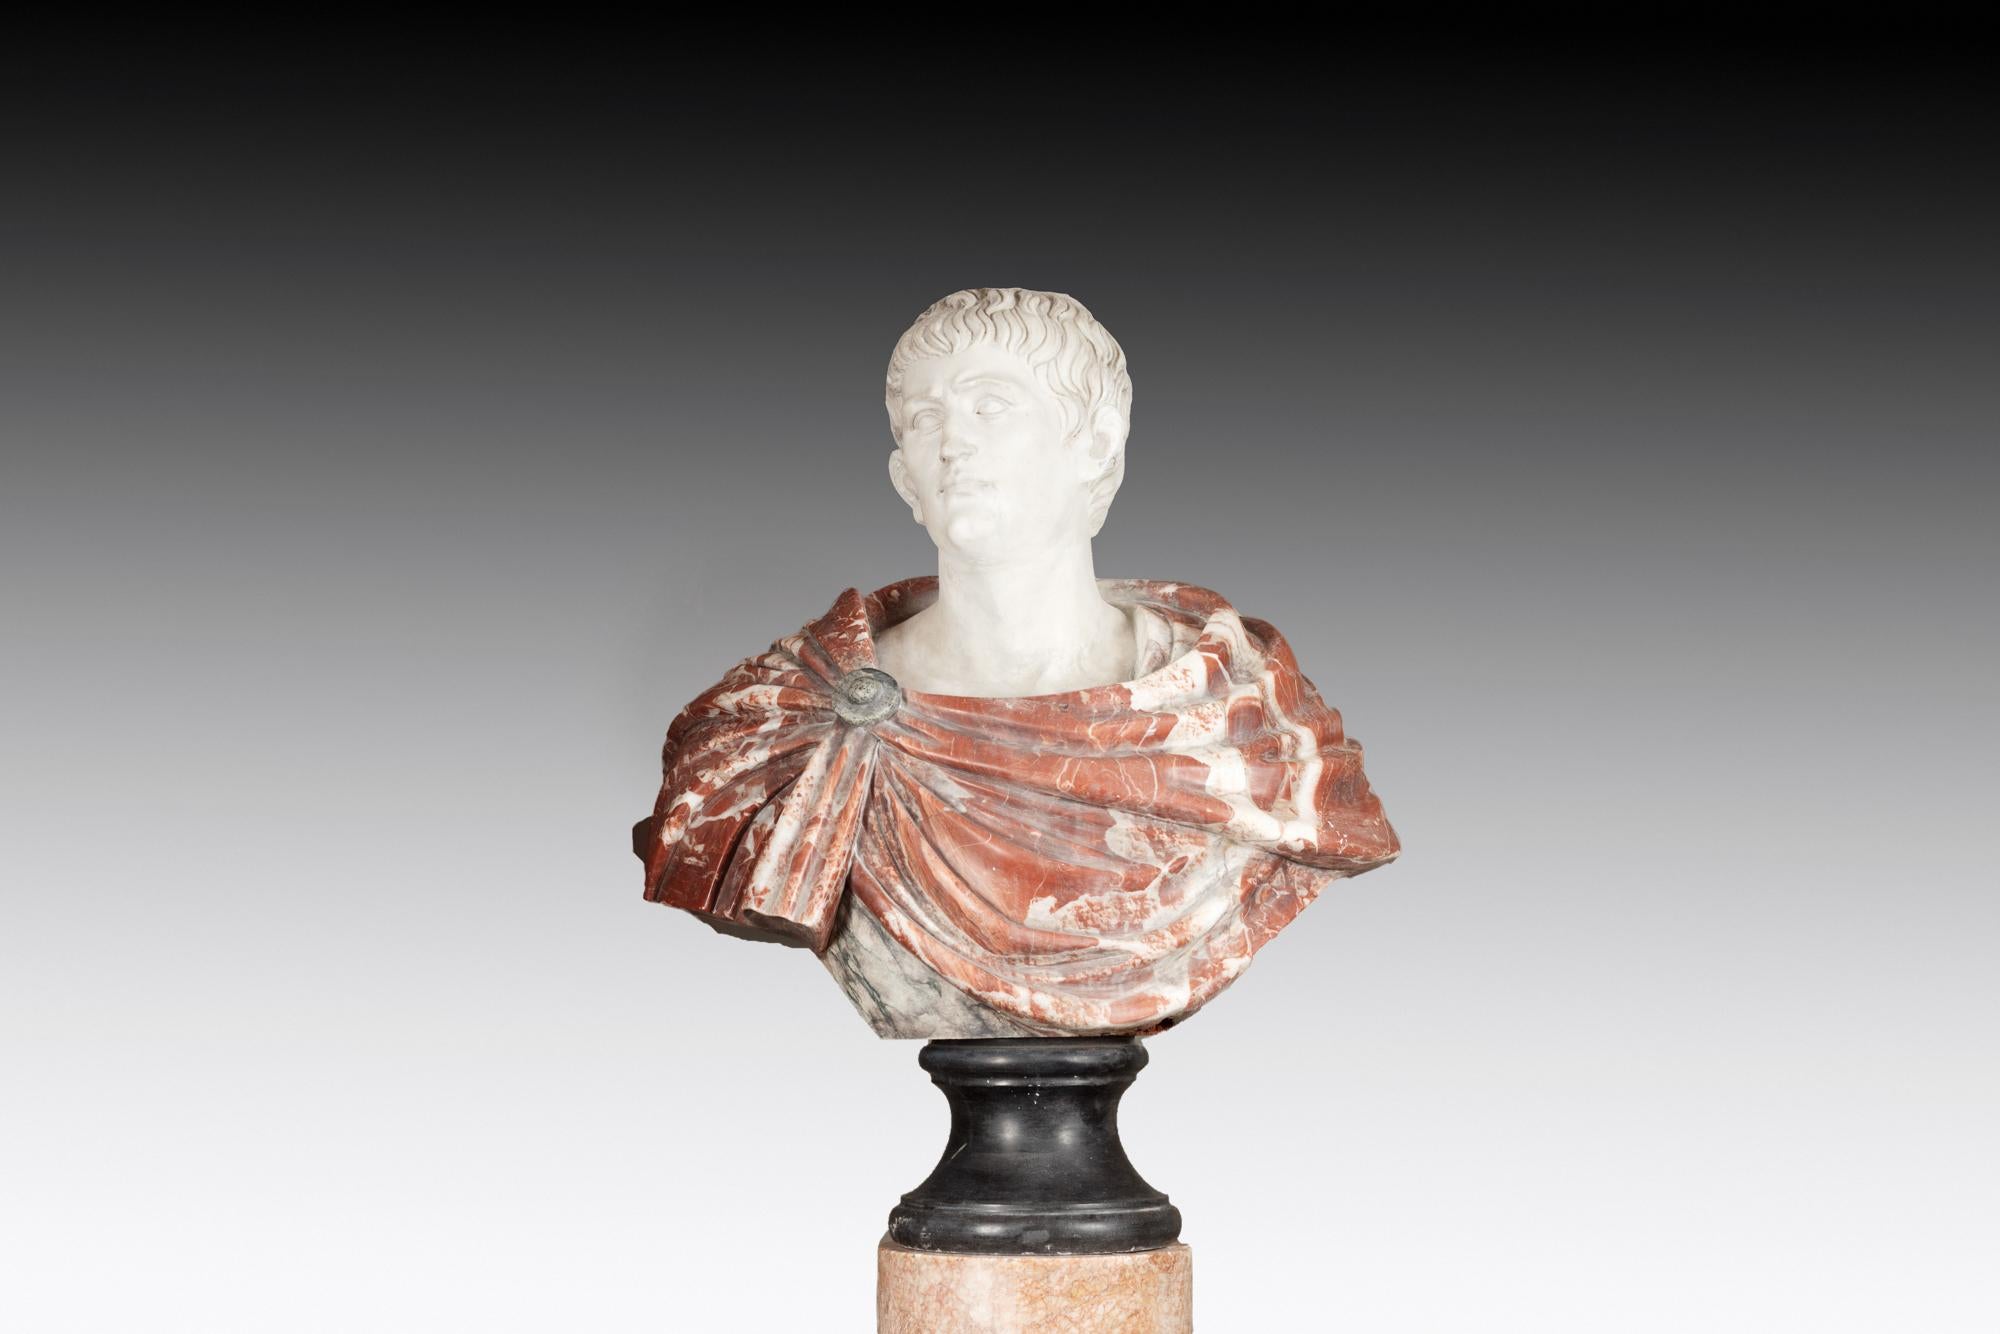 Buste de César Auguste en marbre italien du XVIIIe siècle. Sa robe drapée est sculptée à la main dans du marbre rosso levanto rouge, le visage étant modelé dans du marbre de Carrare blanc contrastant. La pièce repose sur un socle cylindrique en